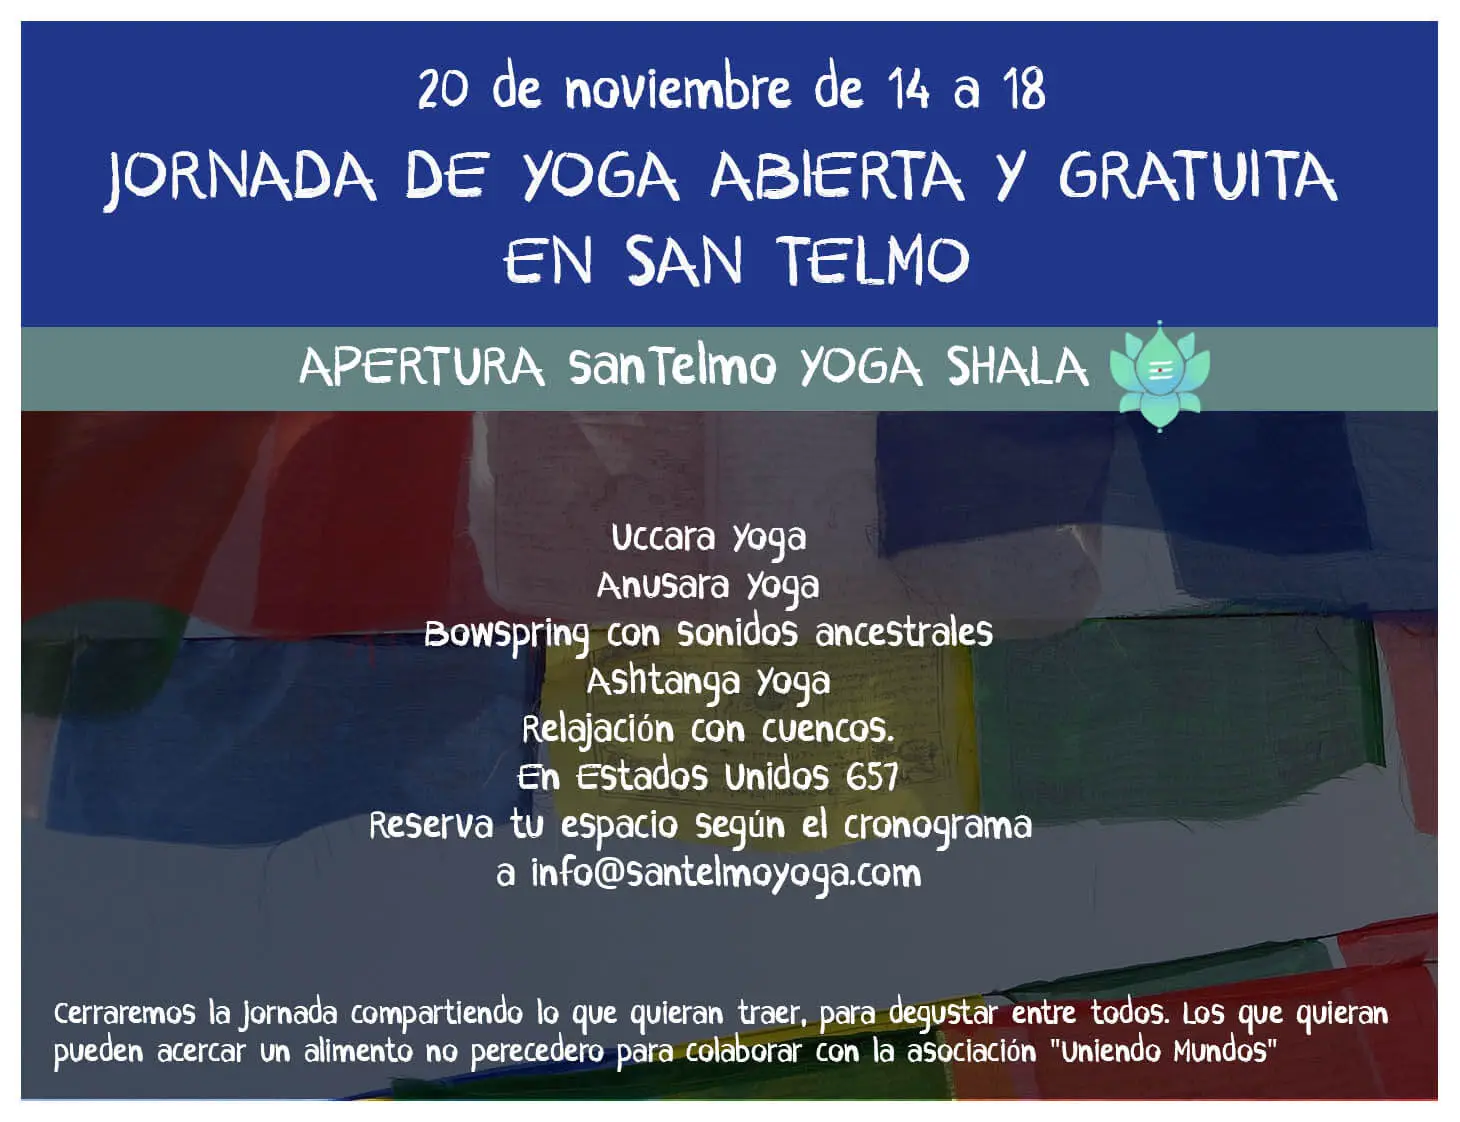 Jornada de Yoga abierta y gratuita en San Telmo